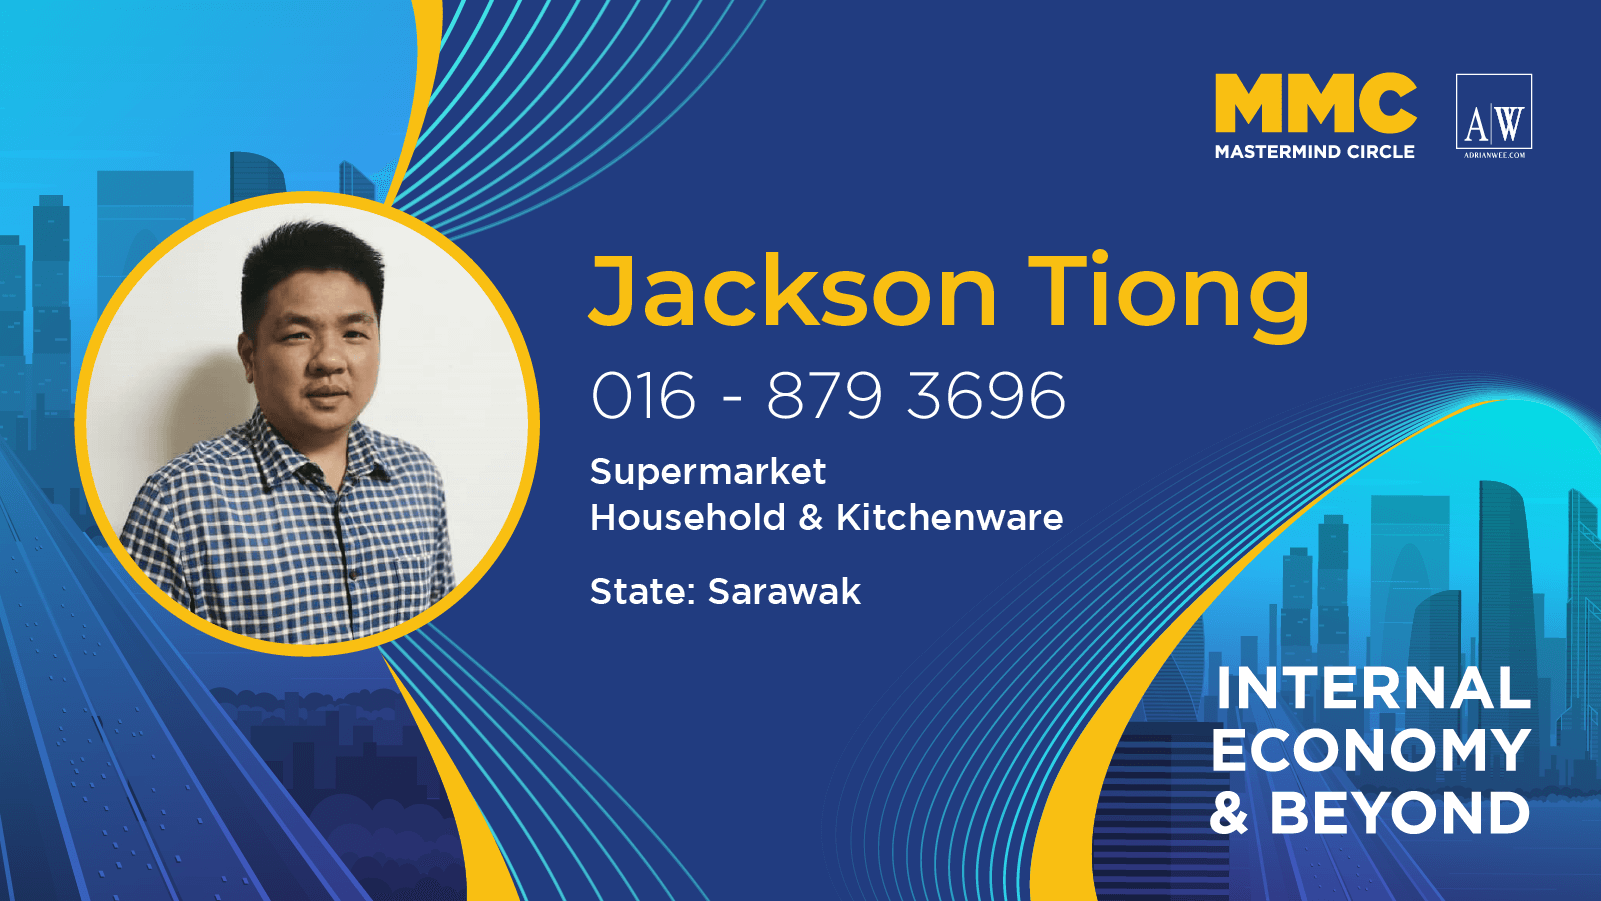 Jackson Tiong